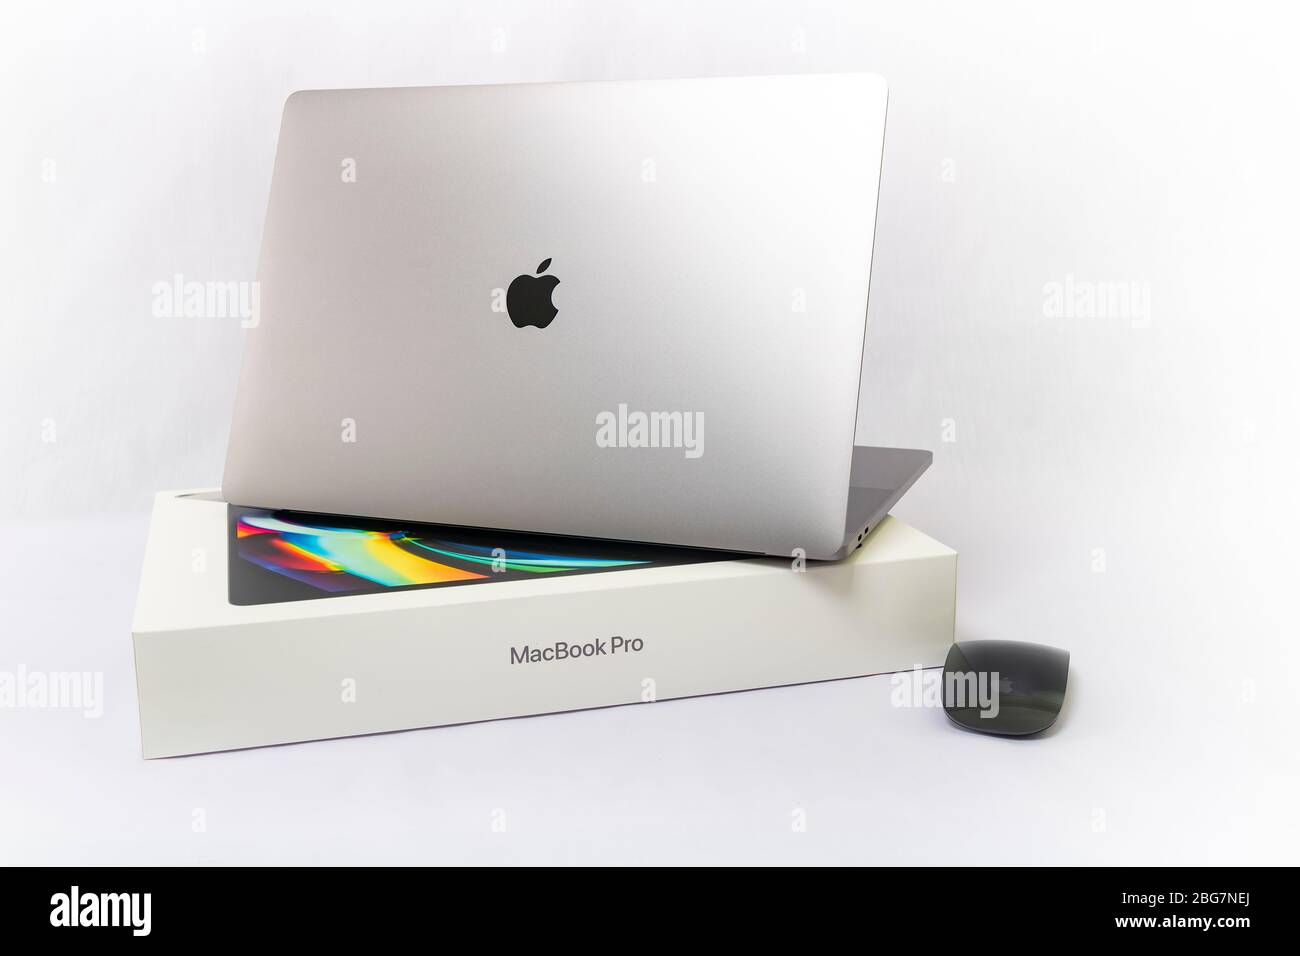 5 avril 2020 - Bangkok, Thaïlande: Nouveau style de clavier MacBook Pro  2019 produit par Apple Company Photo Stock - Alamy